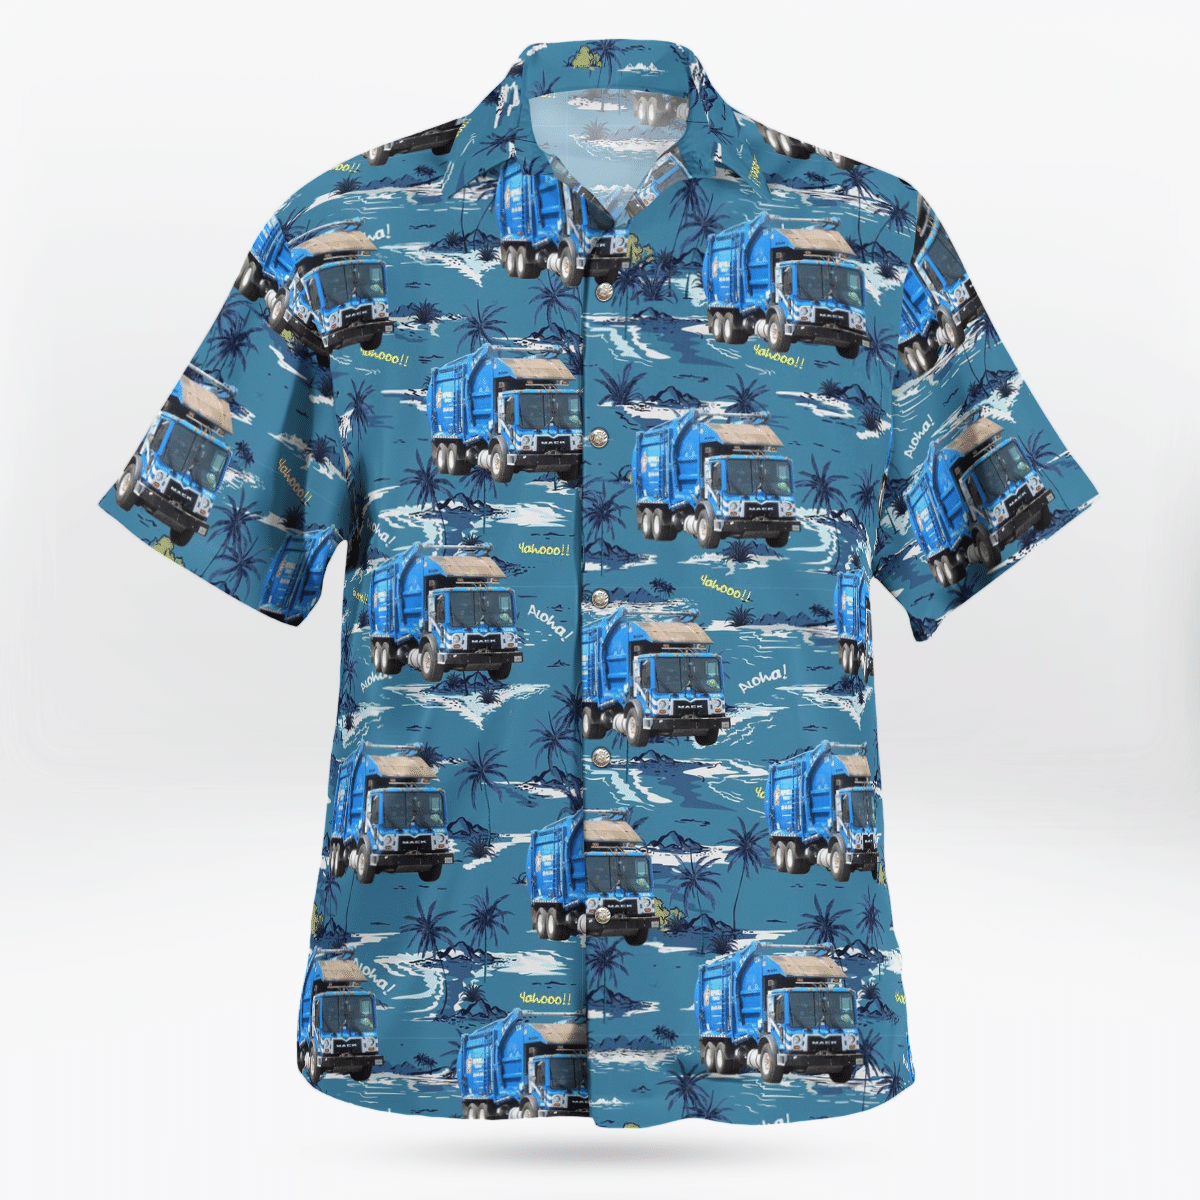 COOL Republic Services Mack MRU McNeilus FEL 1214 3D Hawaii Shirt2